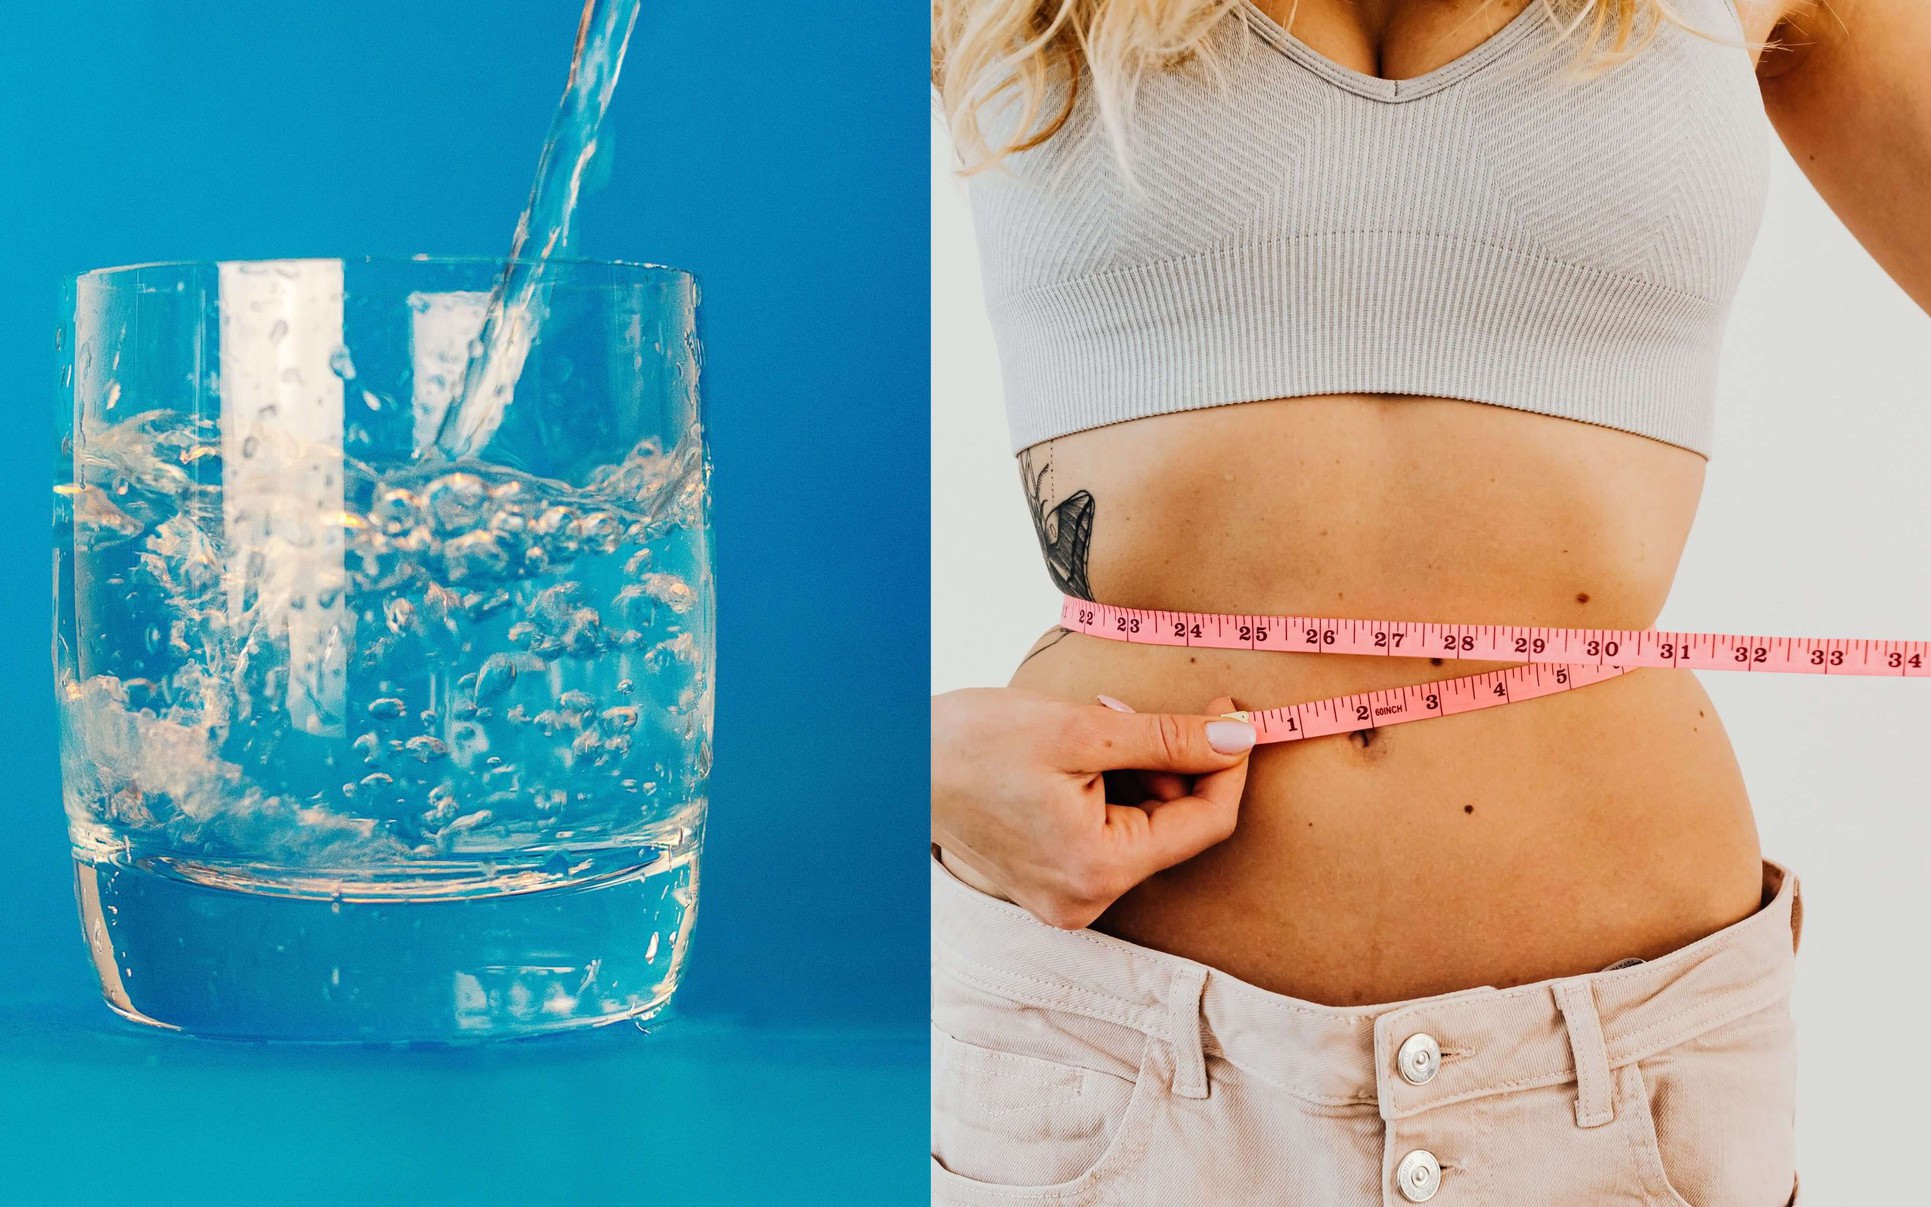 Uống nước trước bữa ăn sáng có giúp giảm cân không?